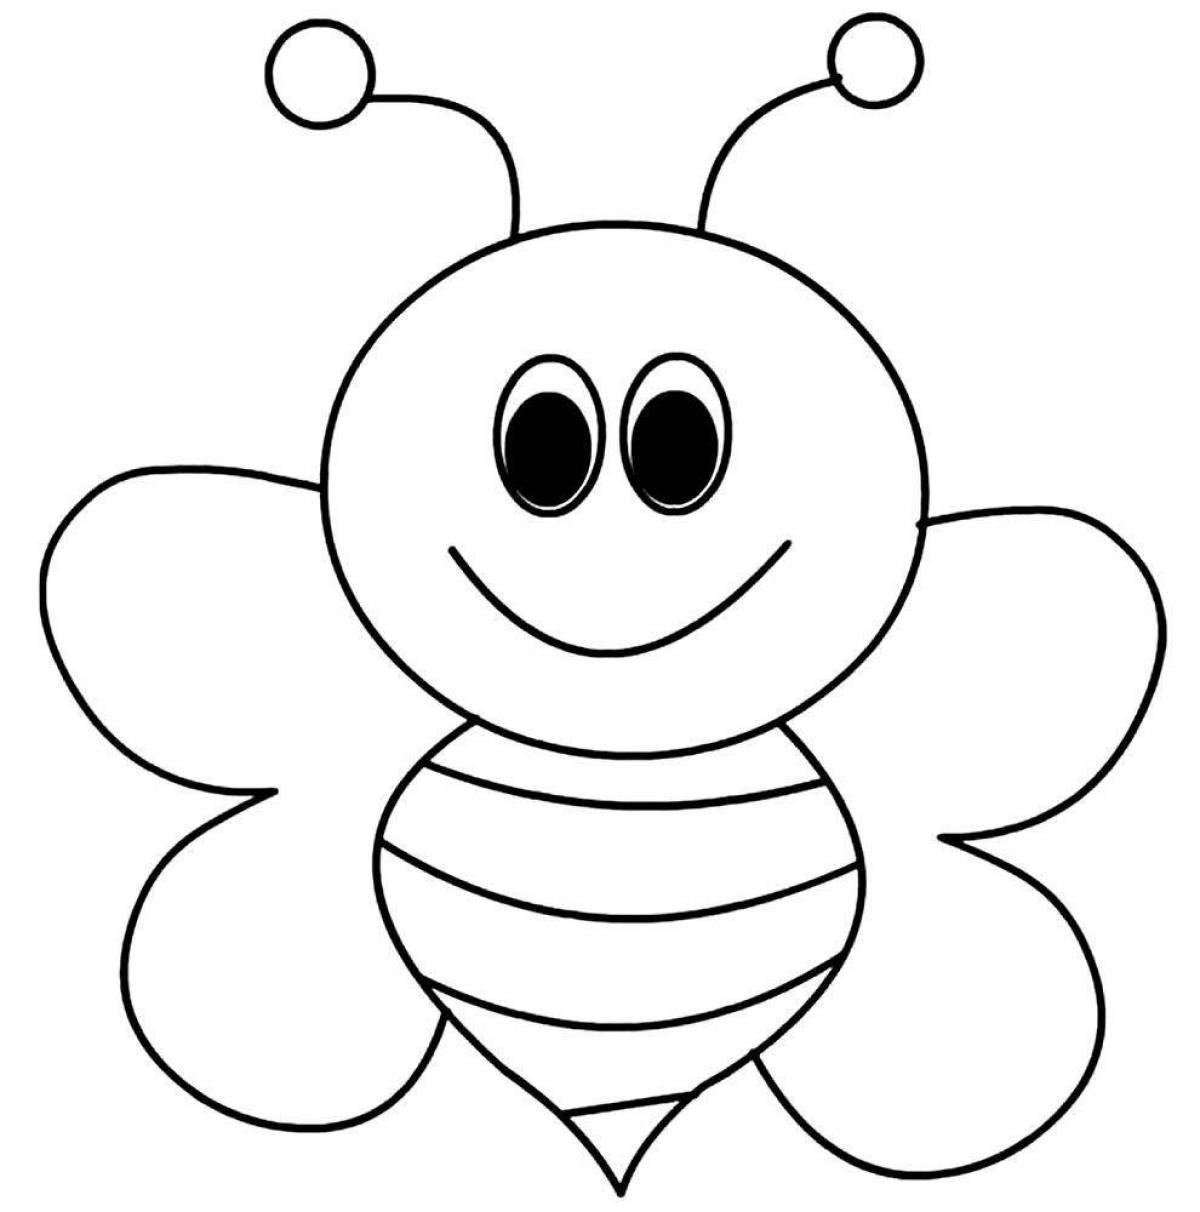 Пчелка раскраска распечатать. Пчела раскраска. Раскраска пчёлка для детей. Пчела раскраска для детей. Пчелка раскраска для малышей.